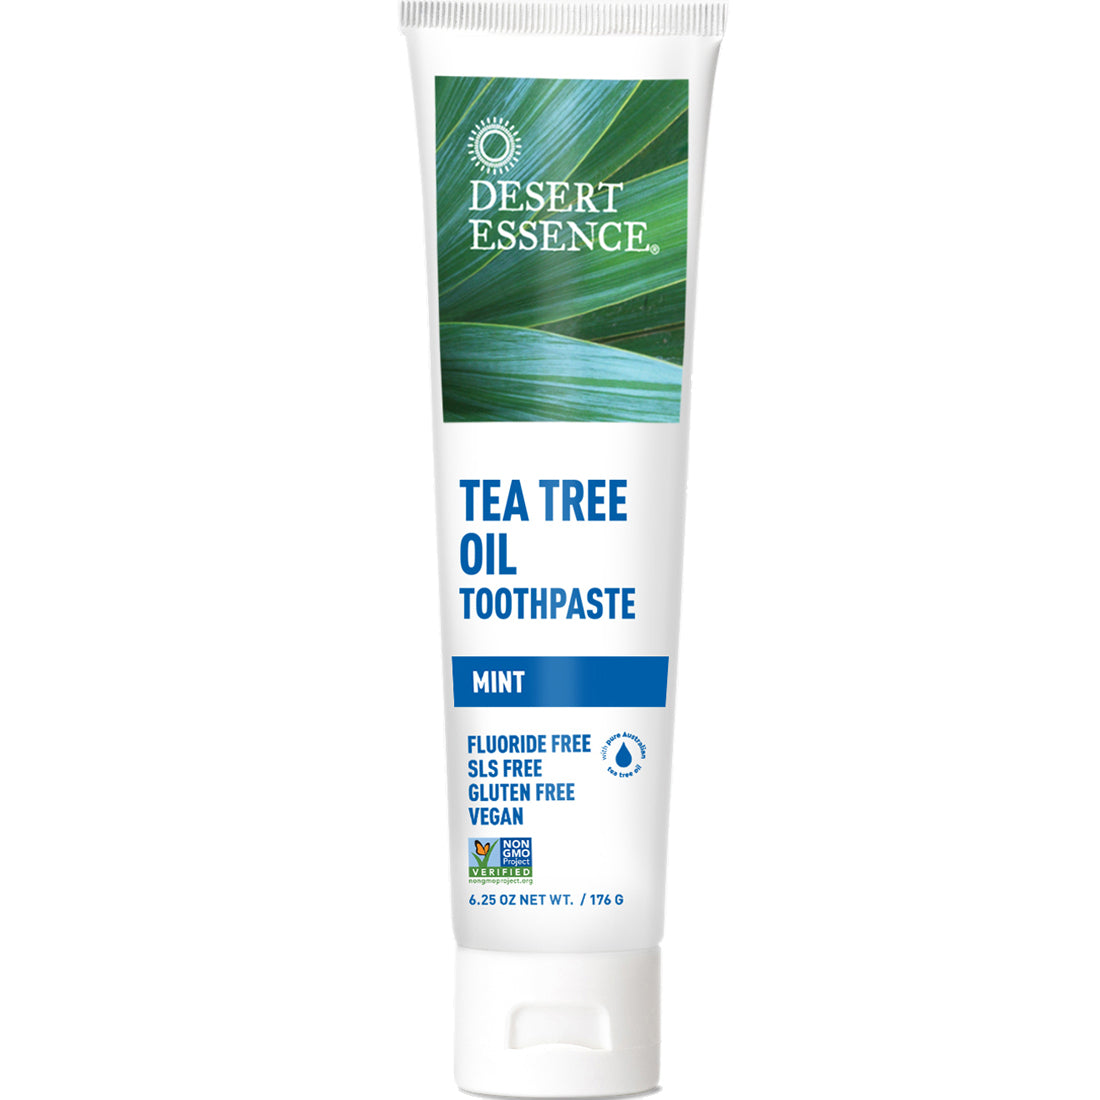 Desert Essence Tea Tree Oil Toothpaste, 176g